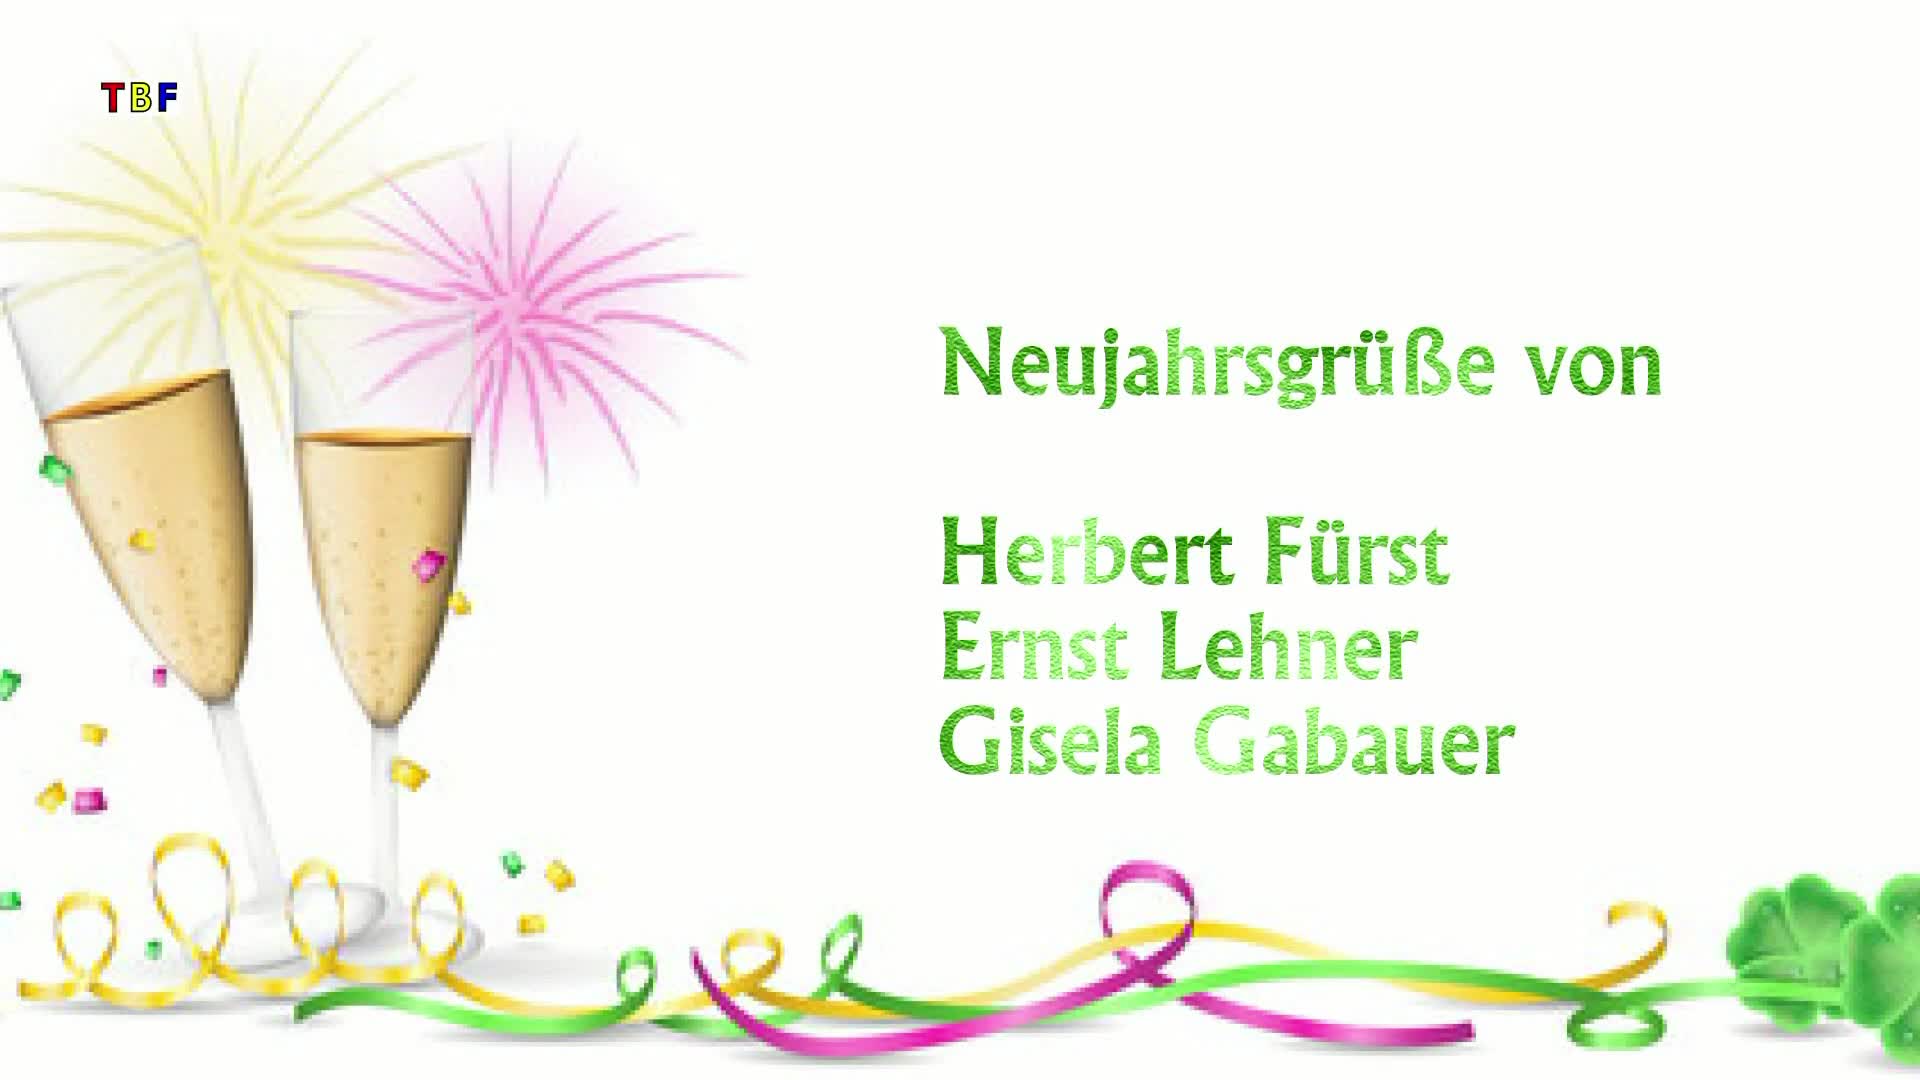 Neujahresgrüße von Herbert Fürst, Ernst Lehner und Gisela Gabauer!